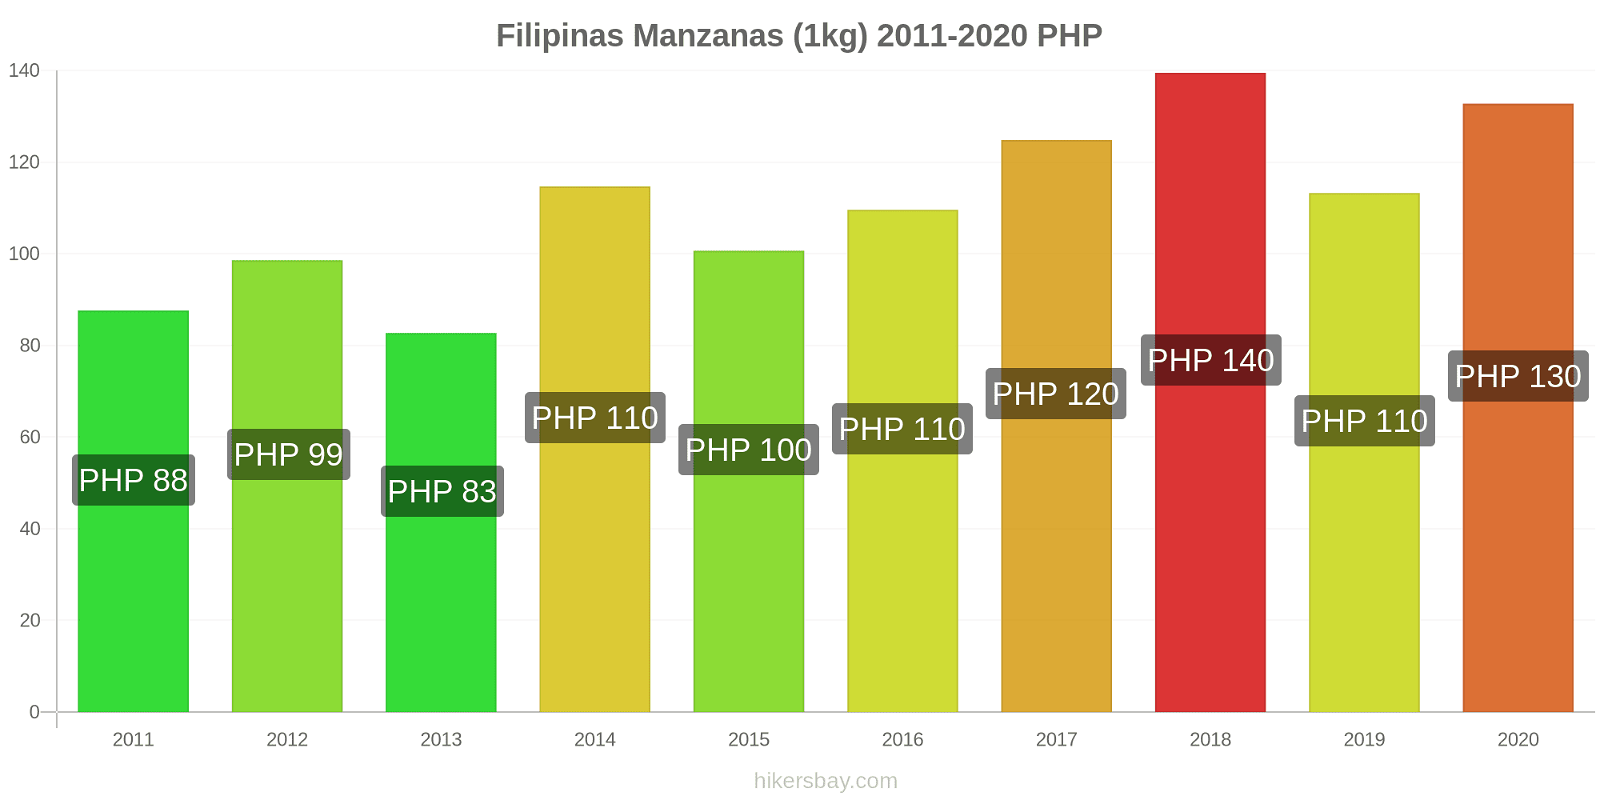 Filipinas cambios de precios Manzanas (1kg) hikersbay.com